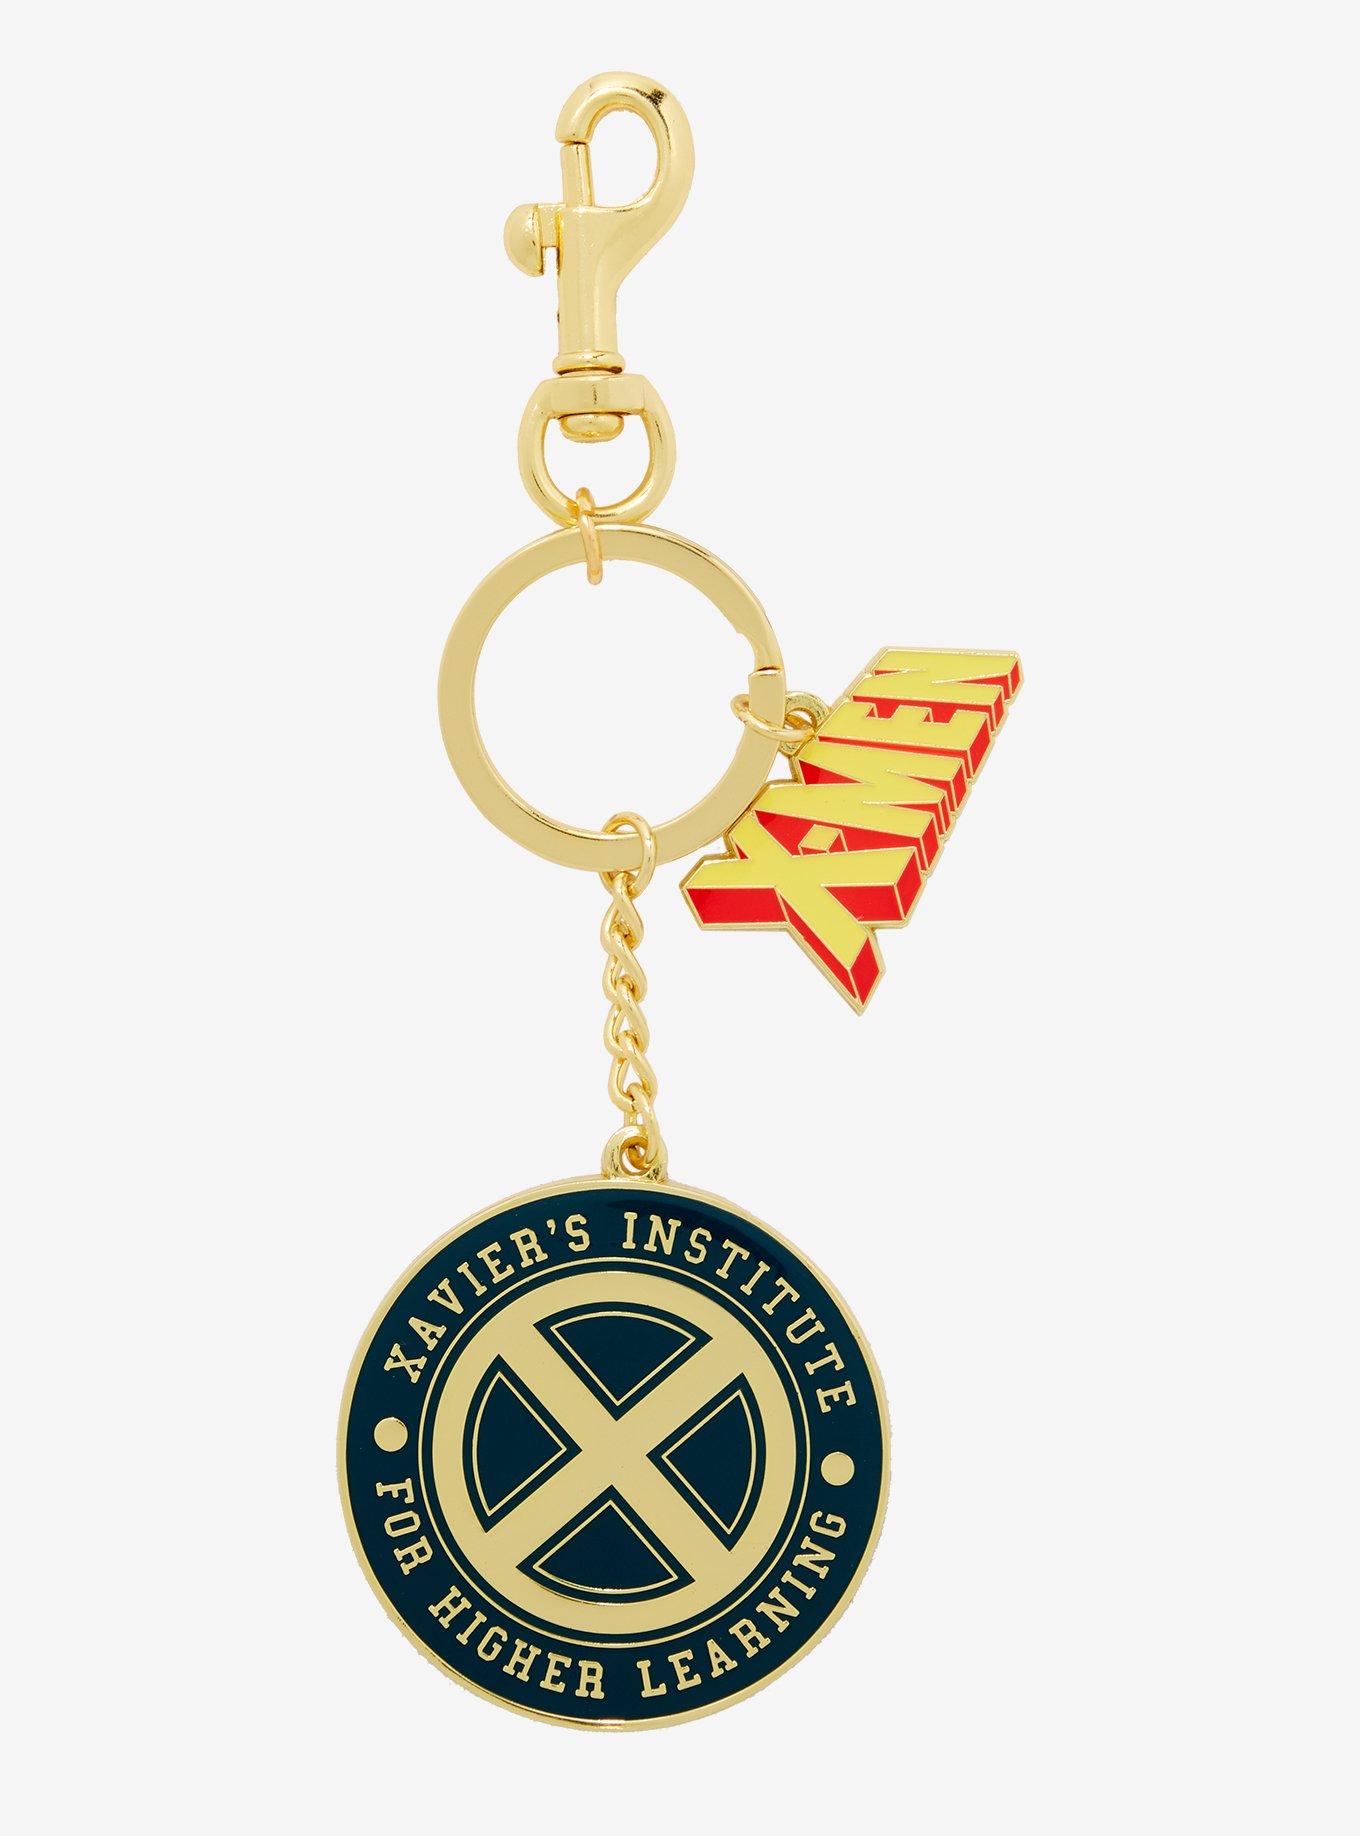 Marvel X-Men '97 Xavier Institute Keychain — BoxLunch Exclusive, , hi-res